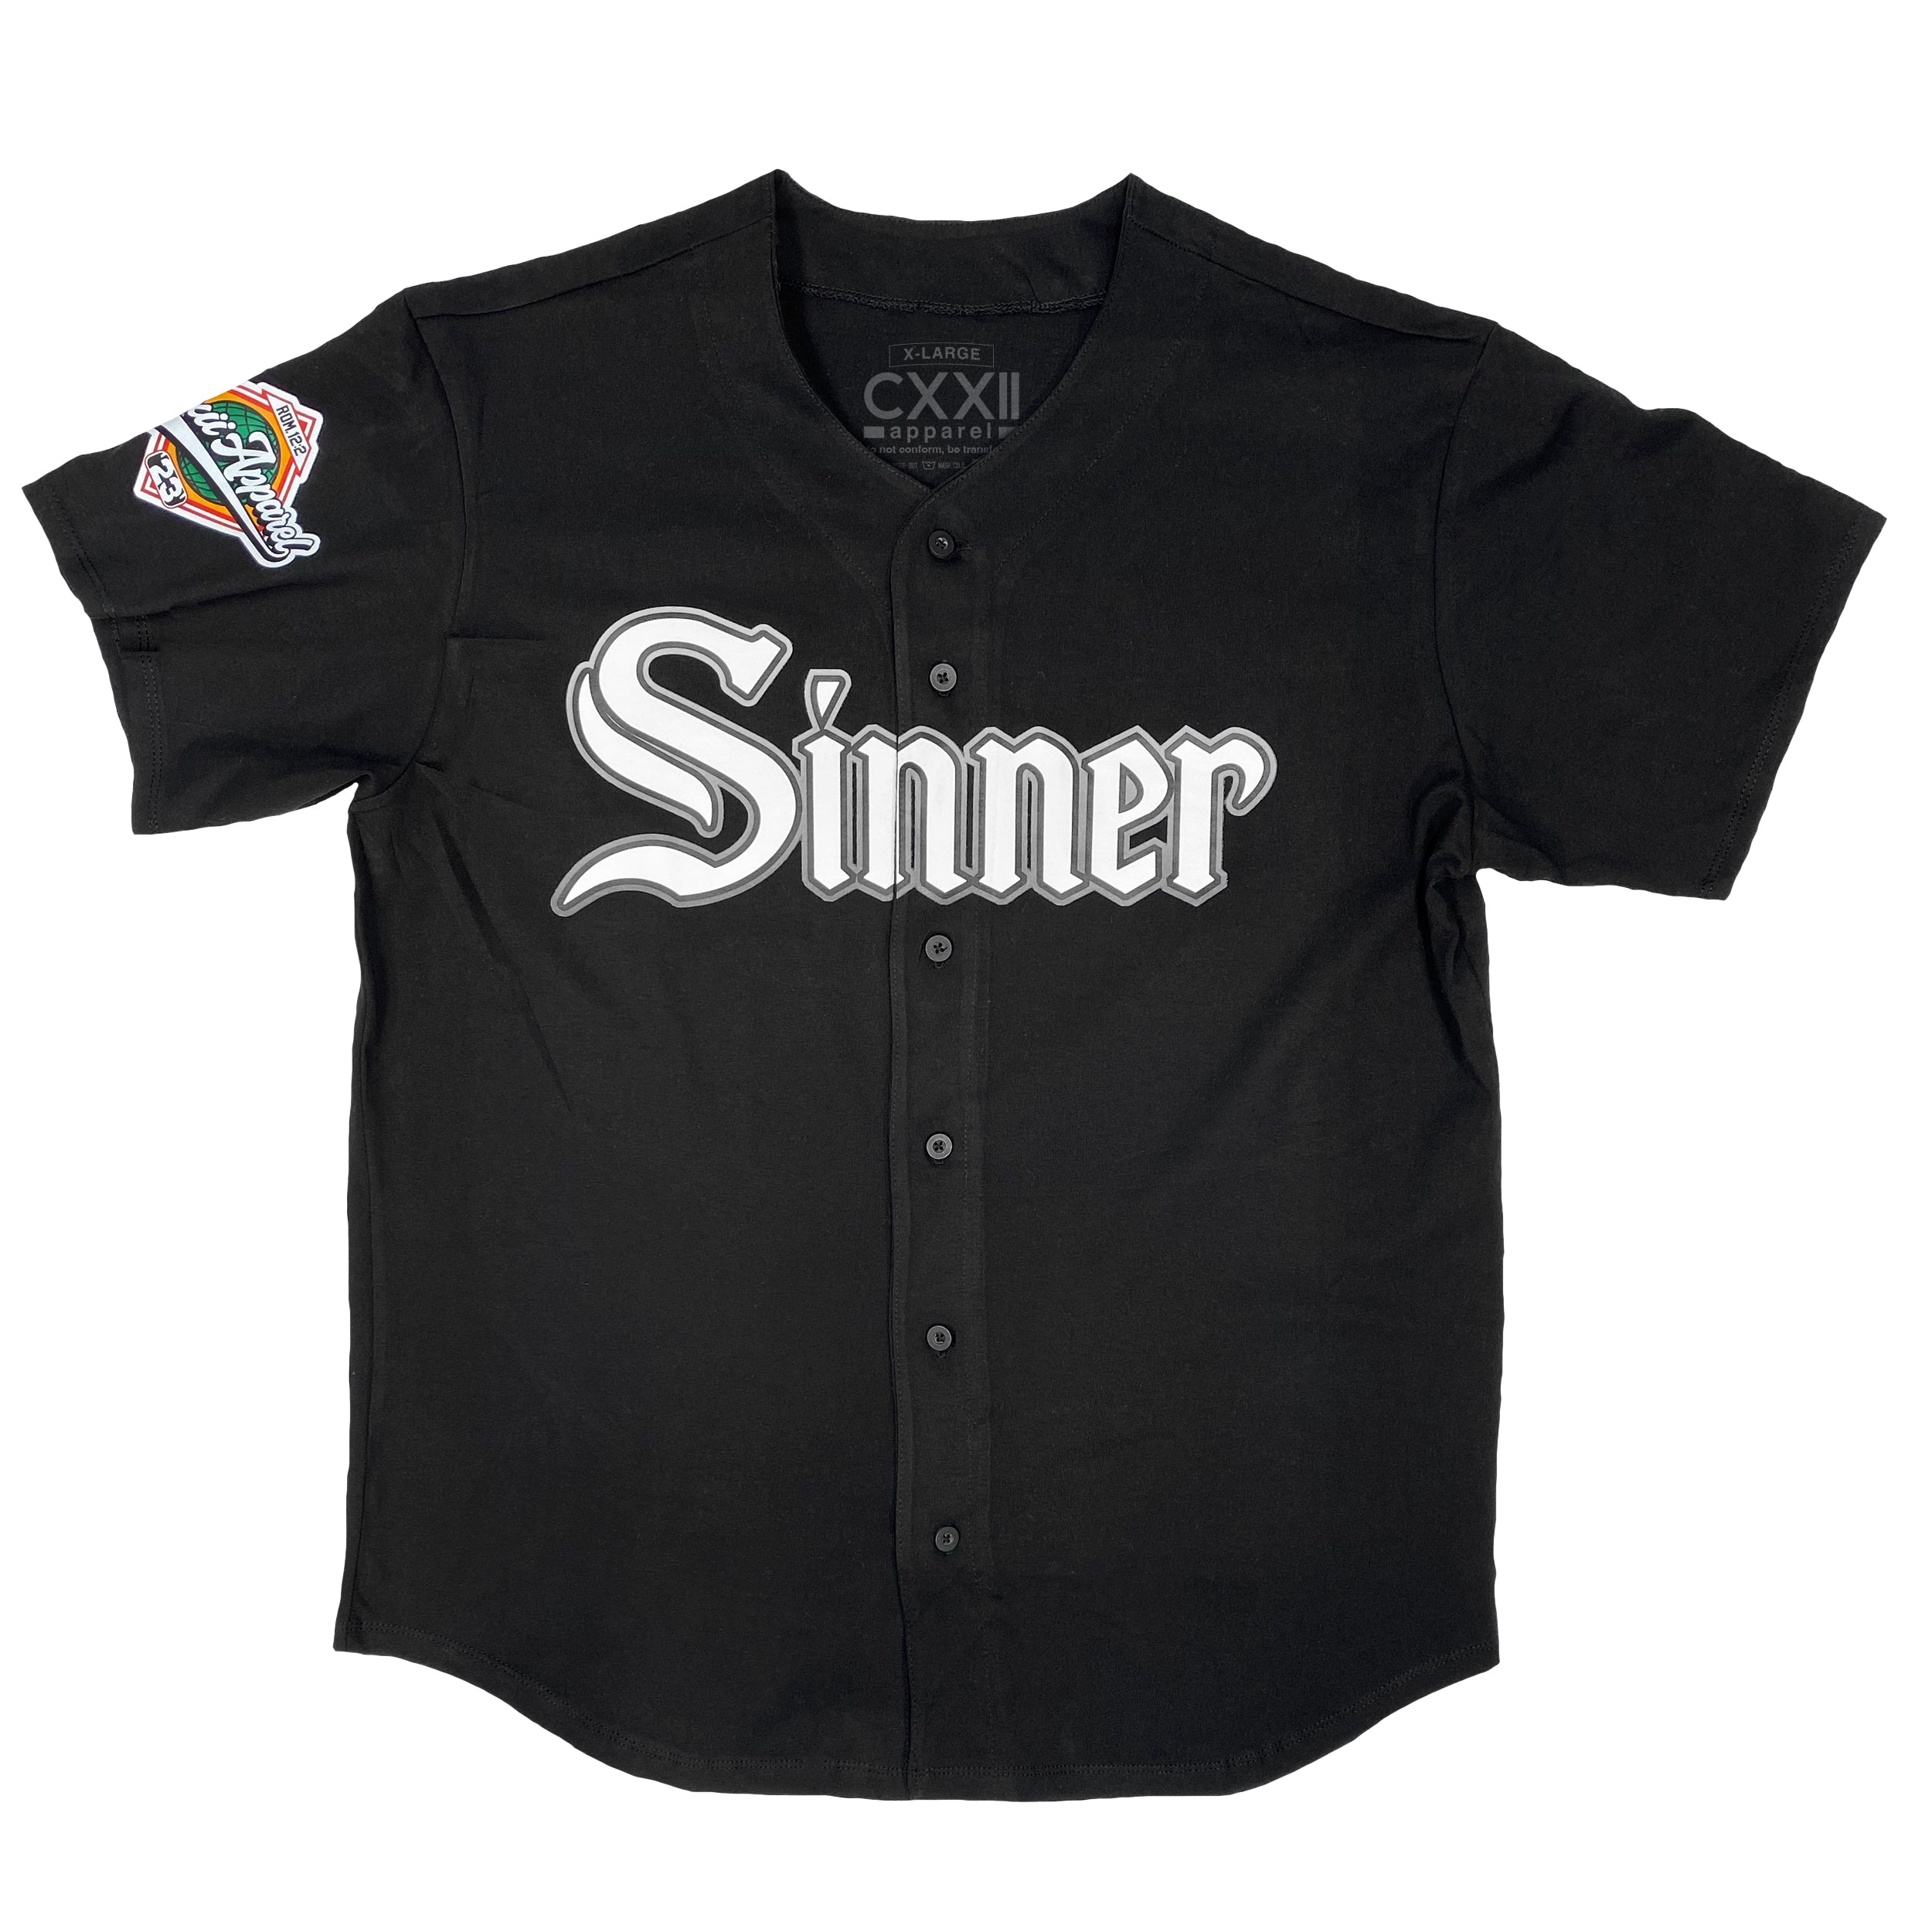 Sinner / Forgiven Southside Baseball Jersey